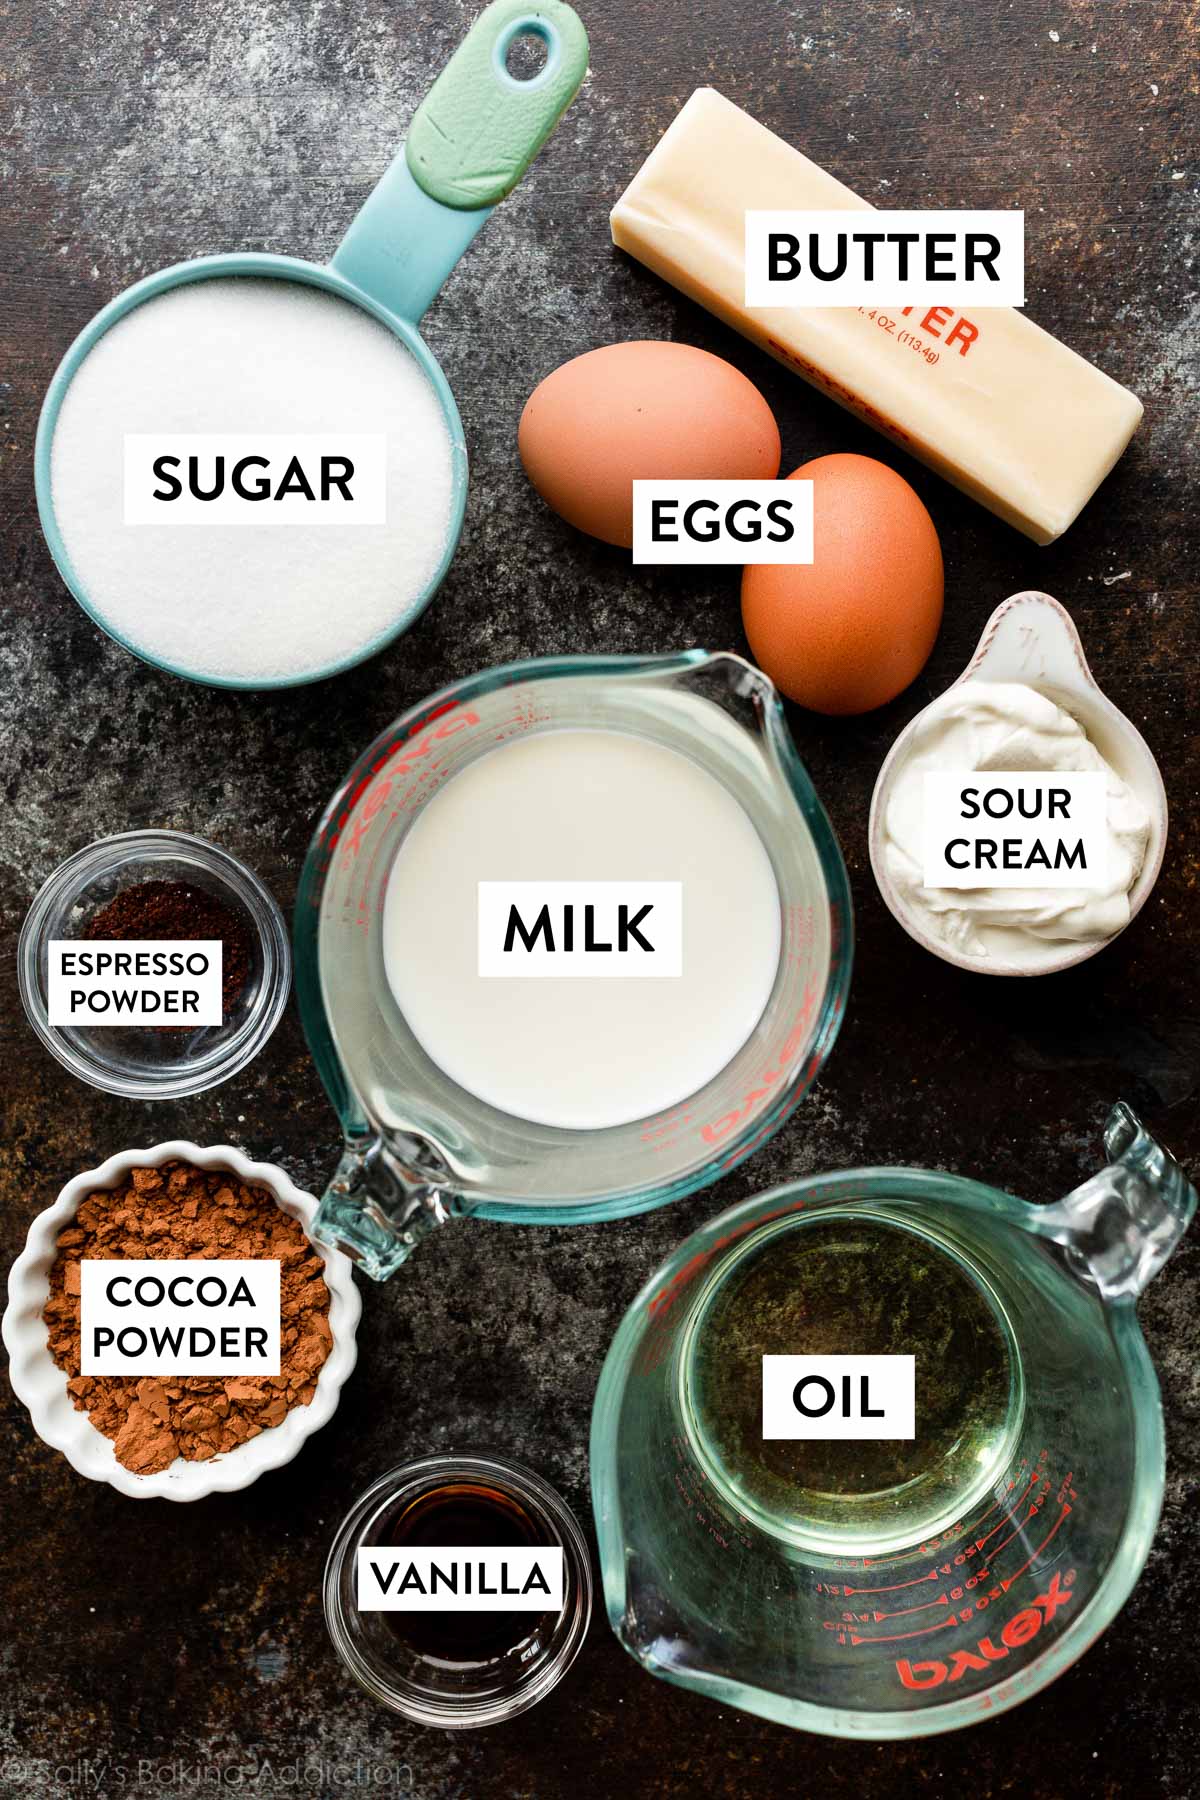 Zutaten auf einer schwarzen Arbeitsfläche, darunter Zucker, Butter, Eier, Milch, Öl und andere